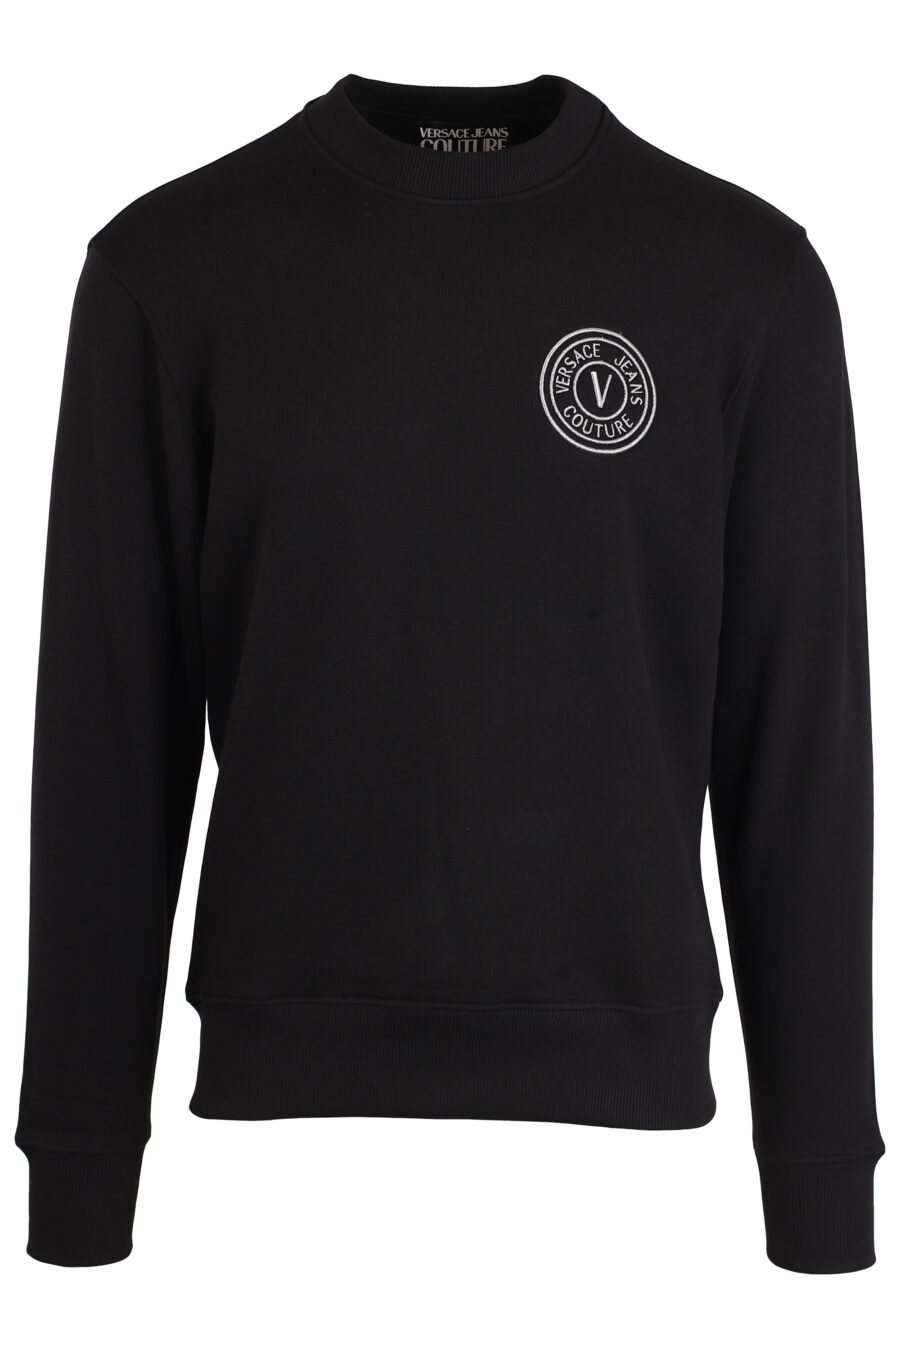 Schwarzes Sweatshirt mit kleinem runden silbernen Logo - IMG 3982